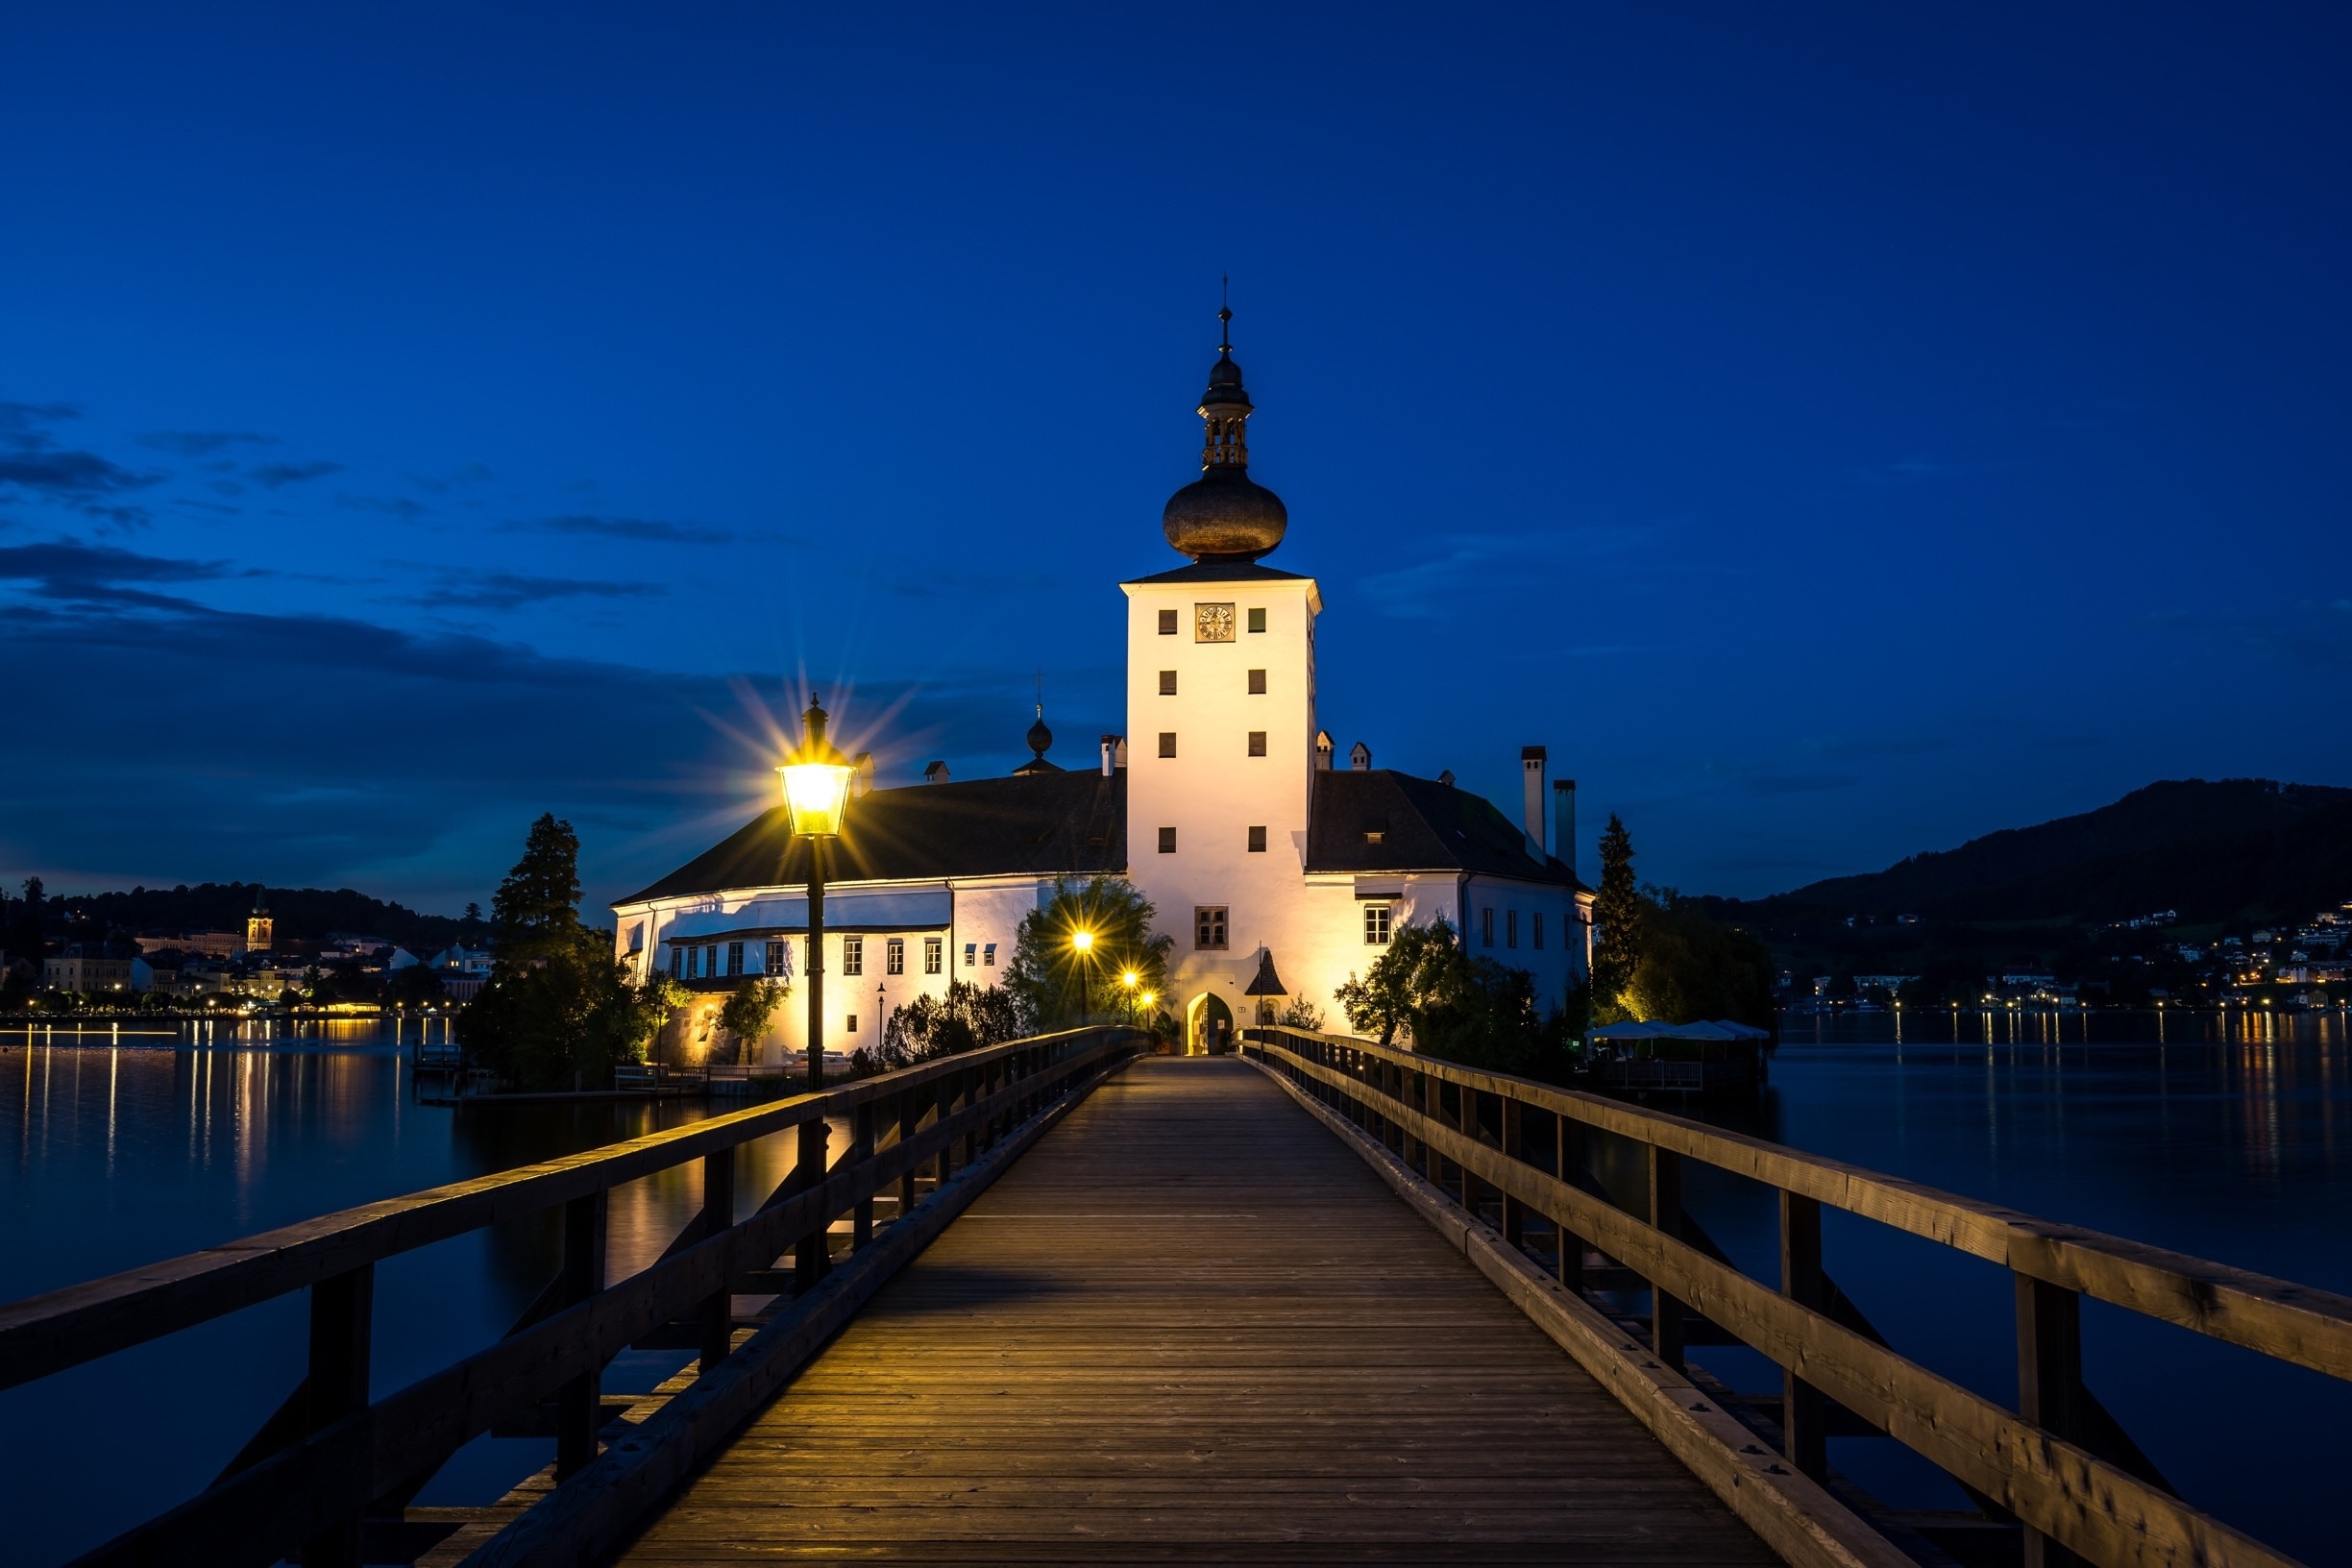 Blue Hour Shot of Schloss Orth, Gmunden. #austria #gmunden #schlossorth #travel #sightseeing #bluehour #sonya7ii #BvSBlue